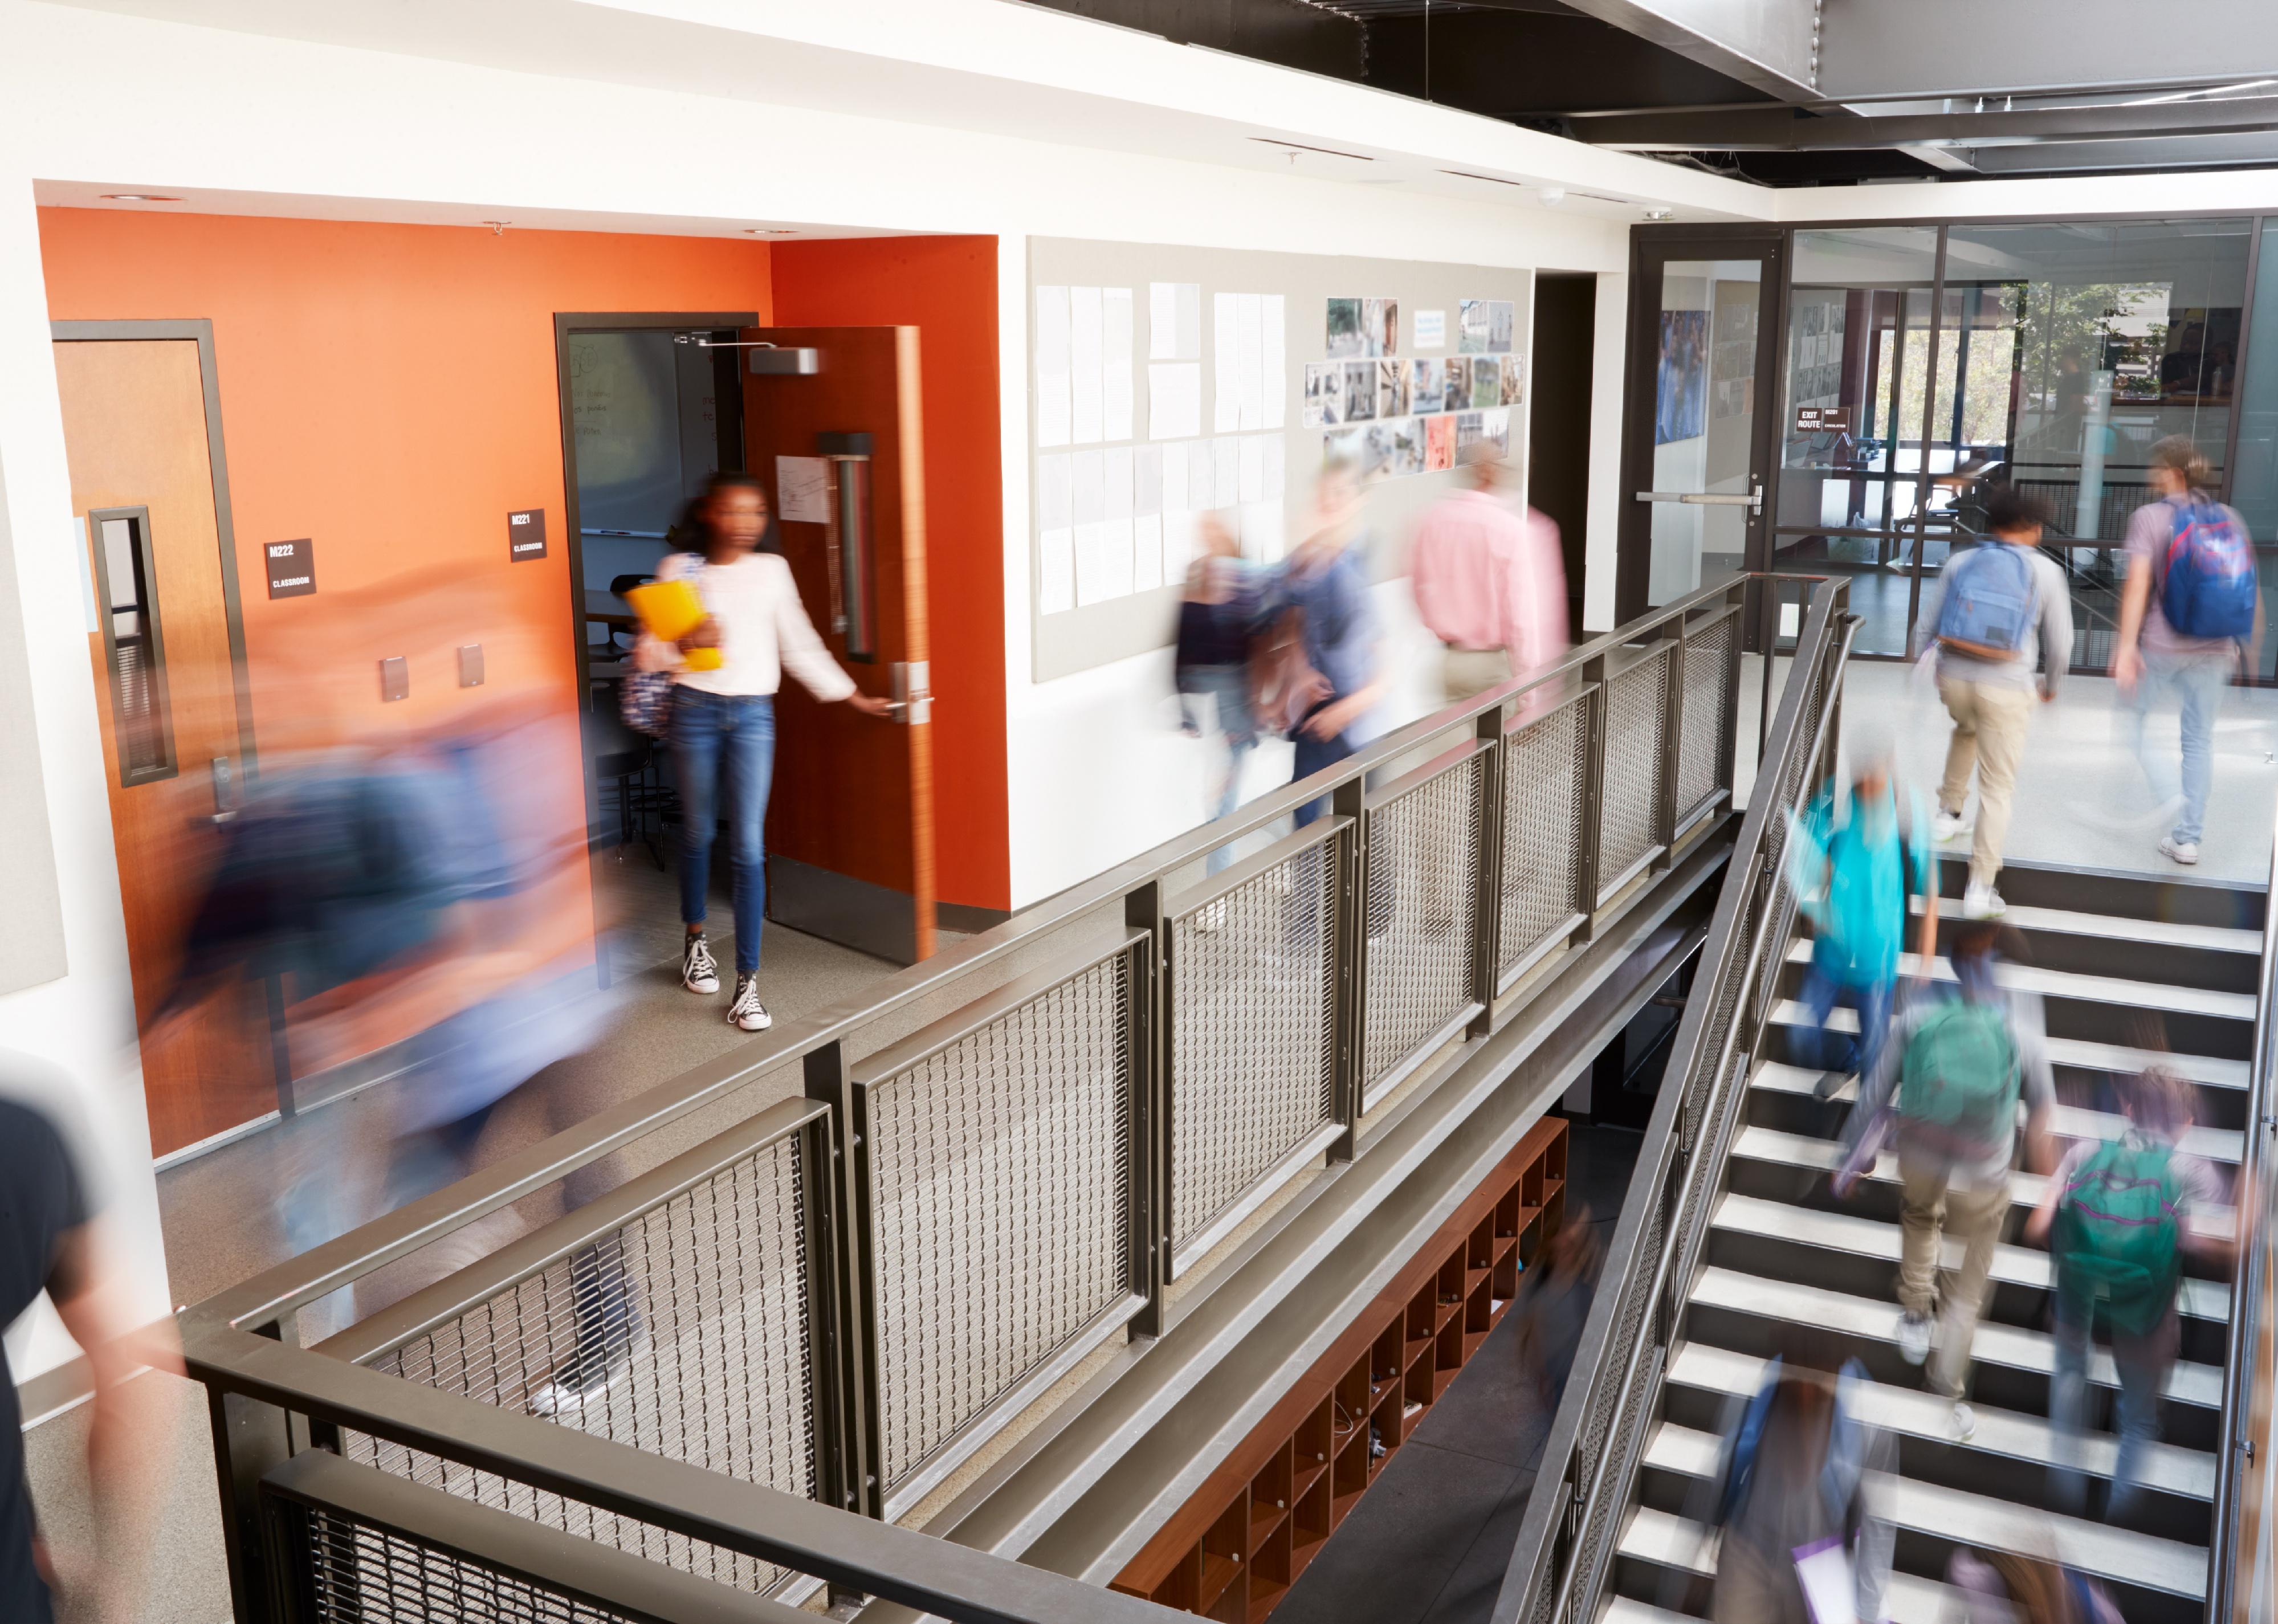 Busy and blurred high school hallway